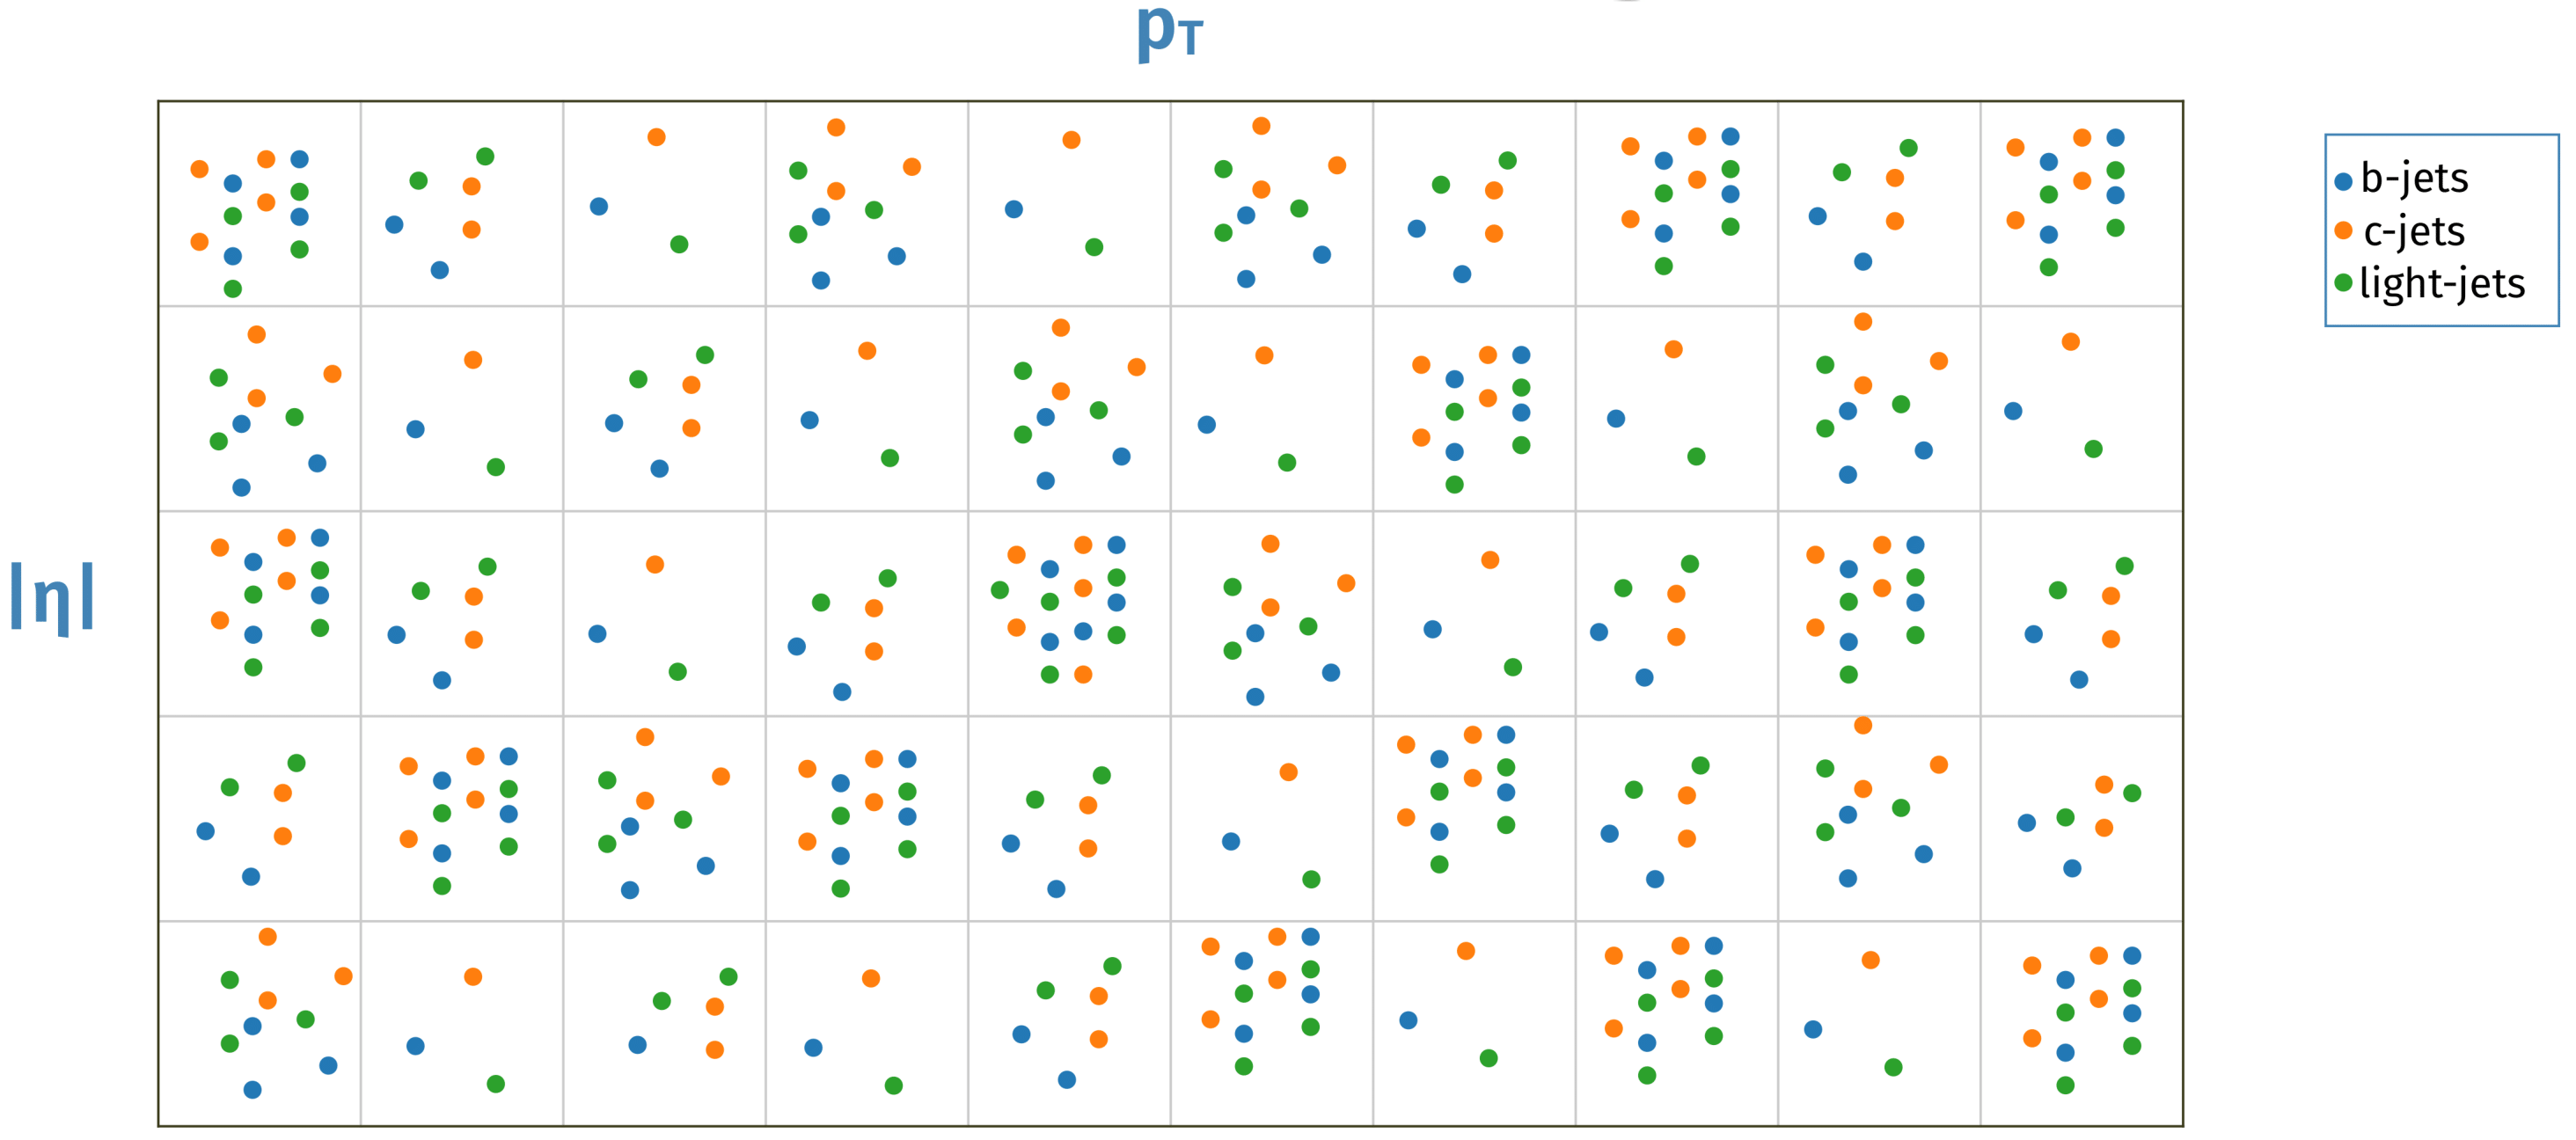 Example for 2D resampling in pT and eta